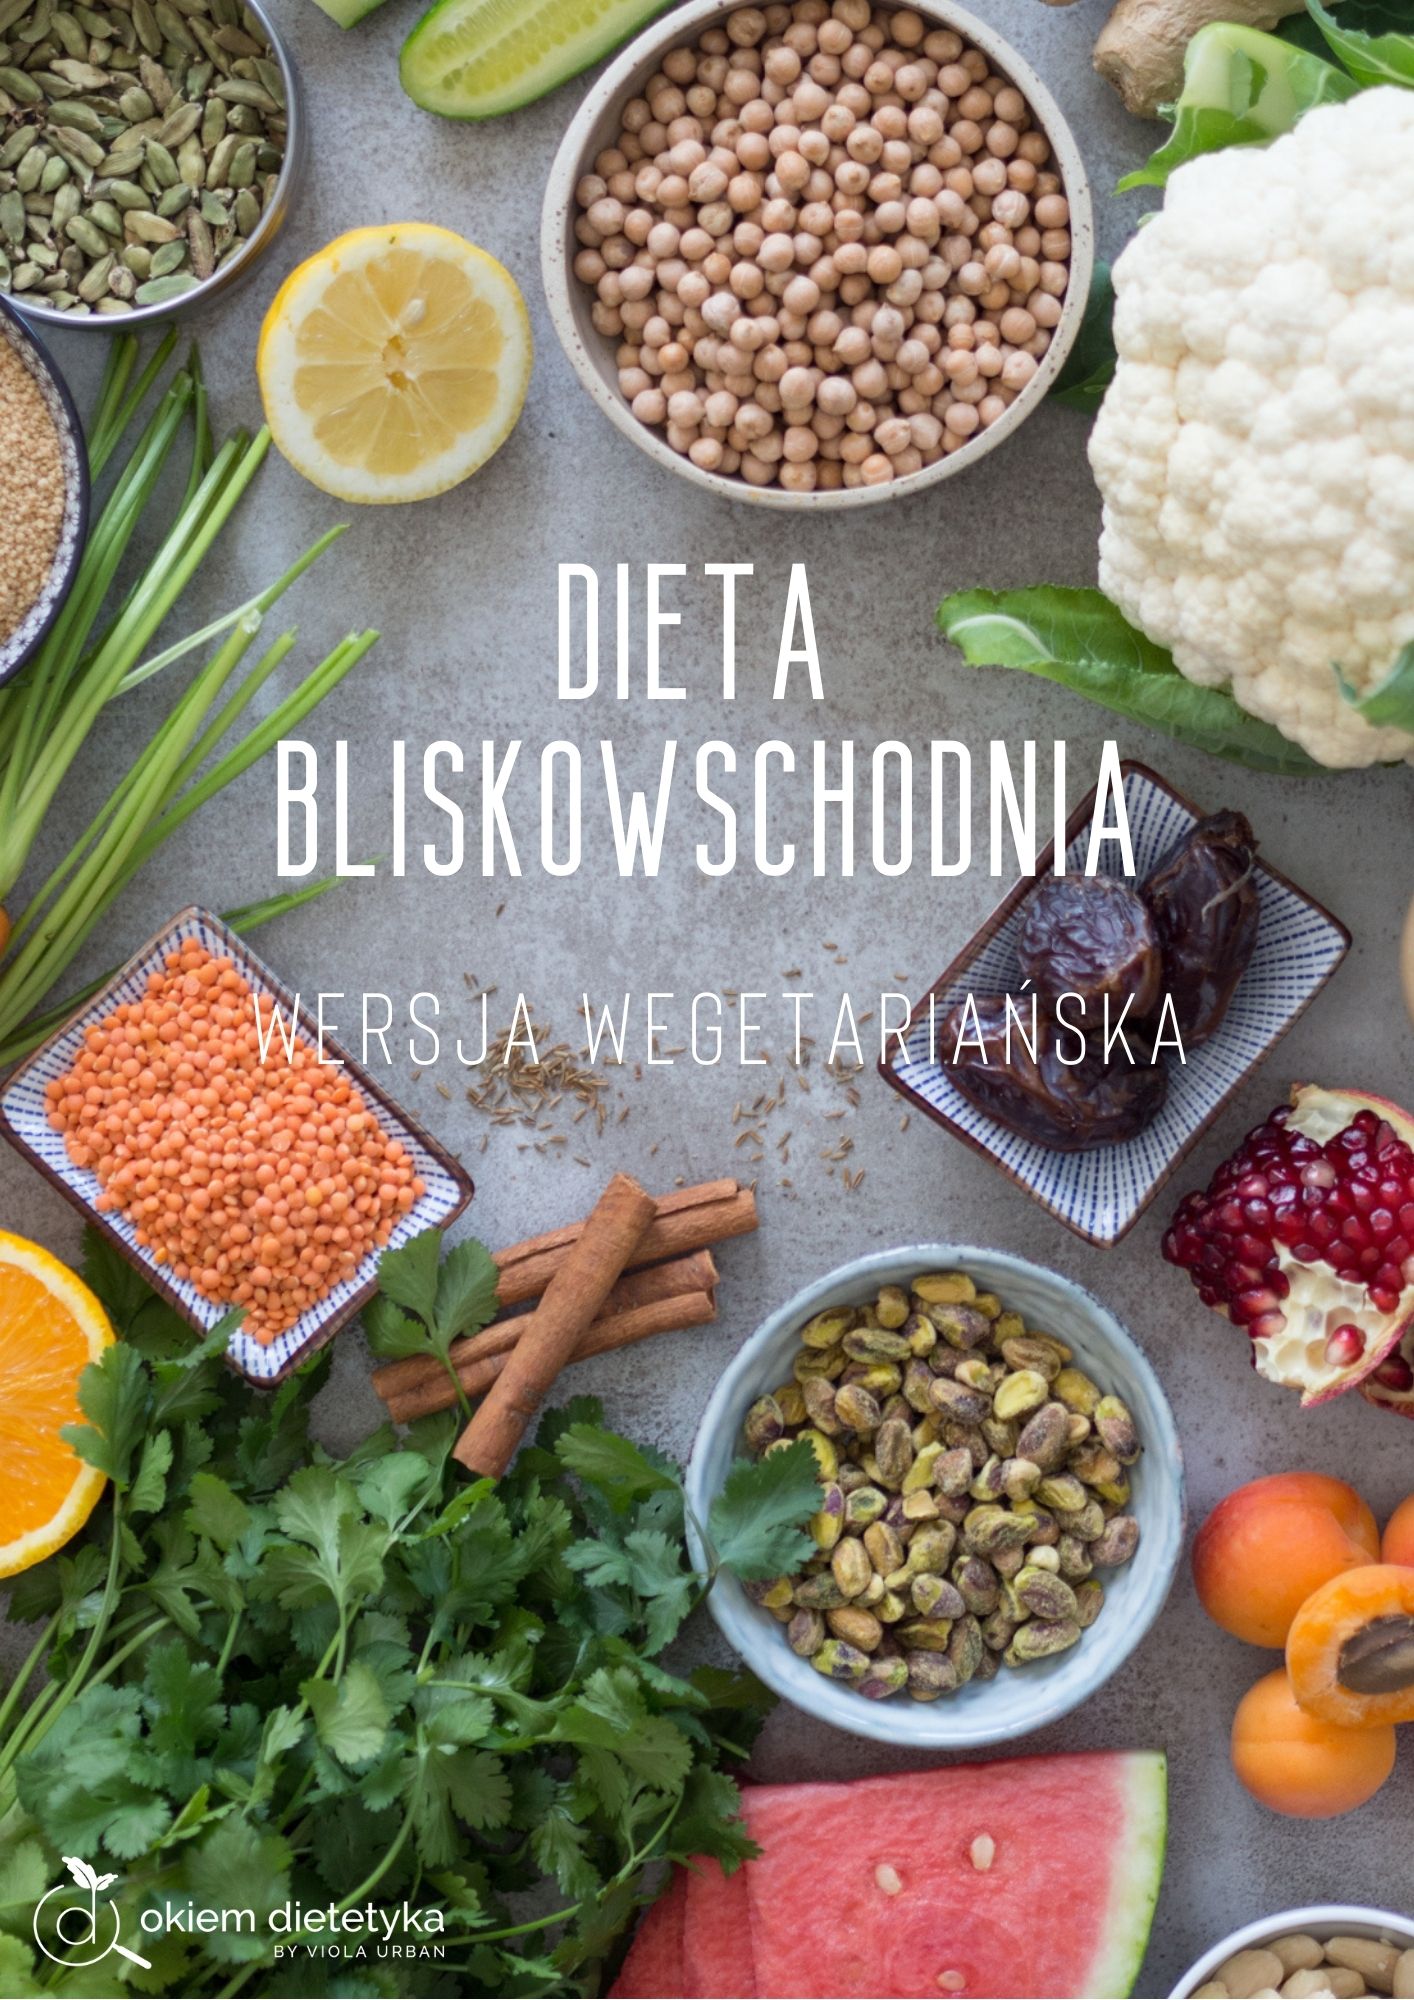 Ebook z dietą bliskowschodnią – wersja wegetariańska